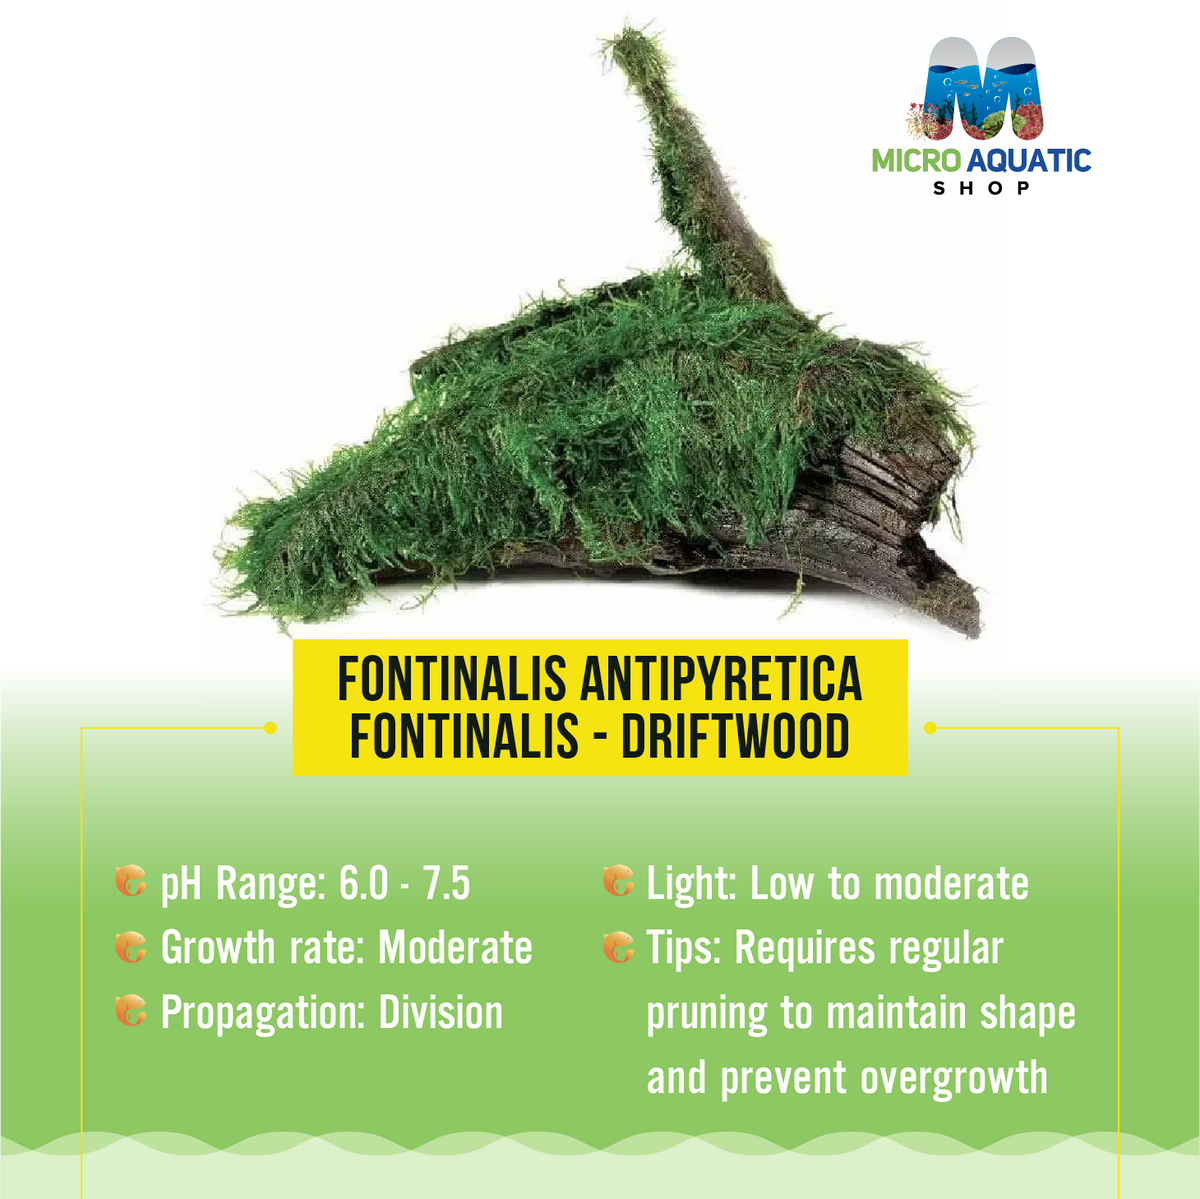 Fontinalis antipyretica - Fontinalis - Driftwood